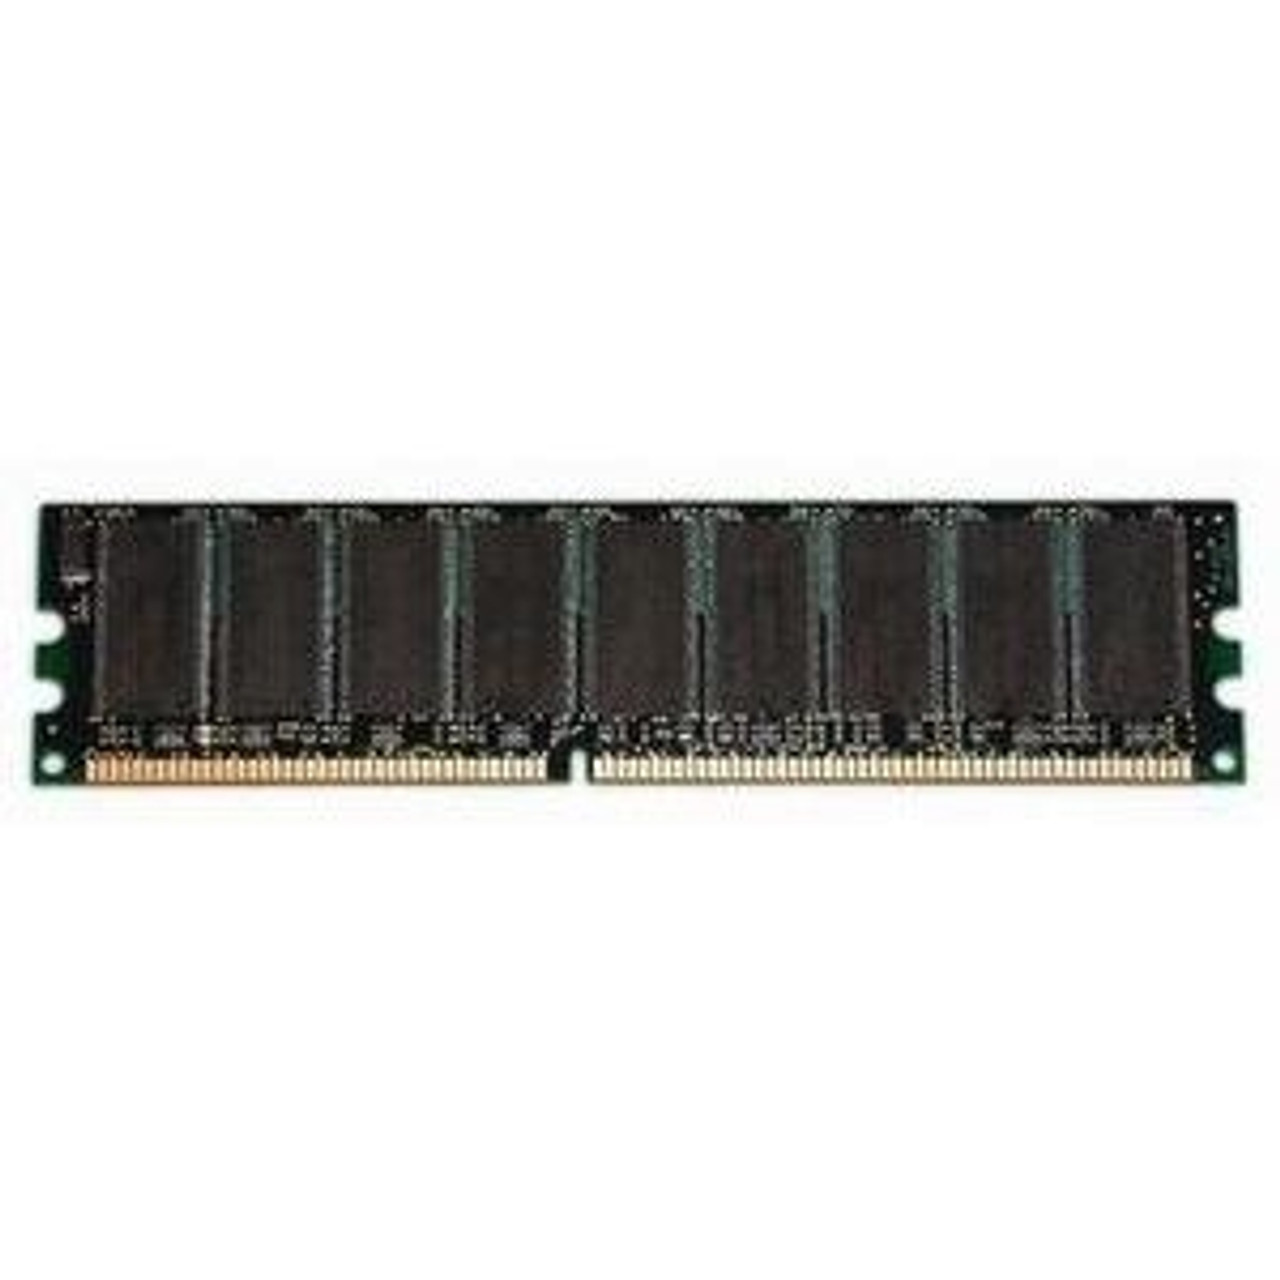 PM310AV HP 512MB DDR2 SDRAM Memory Module